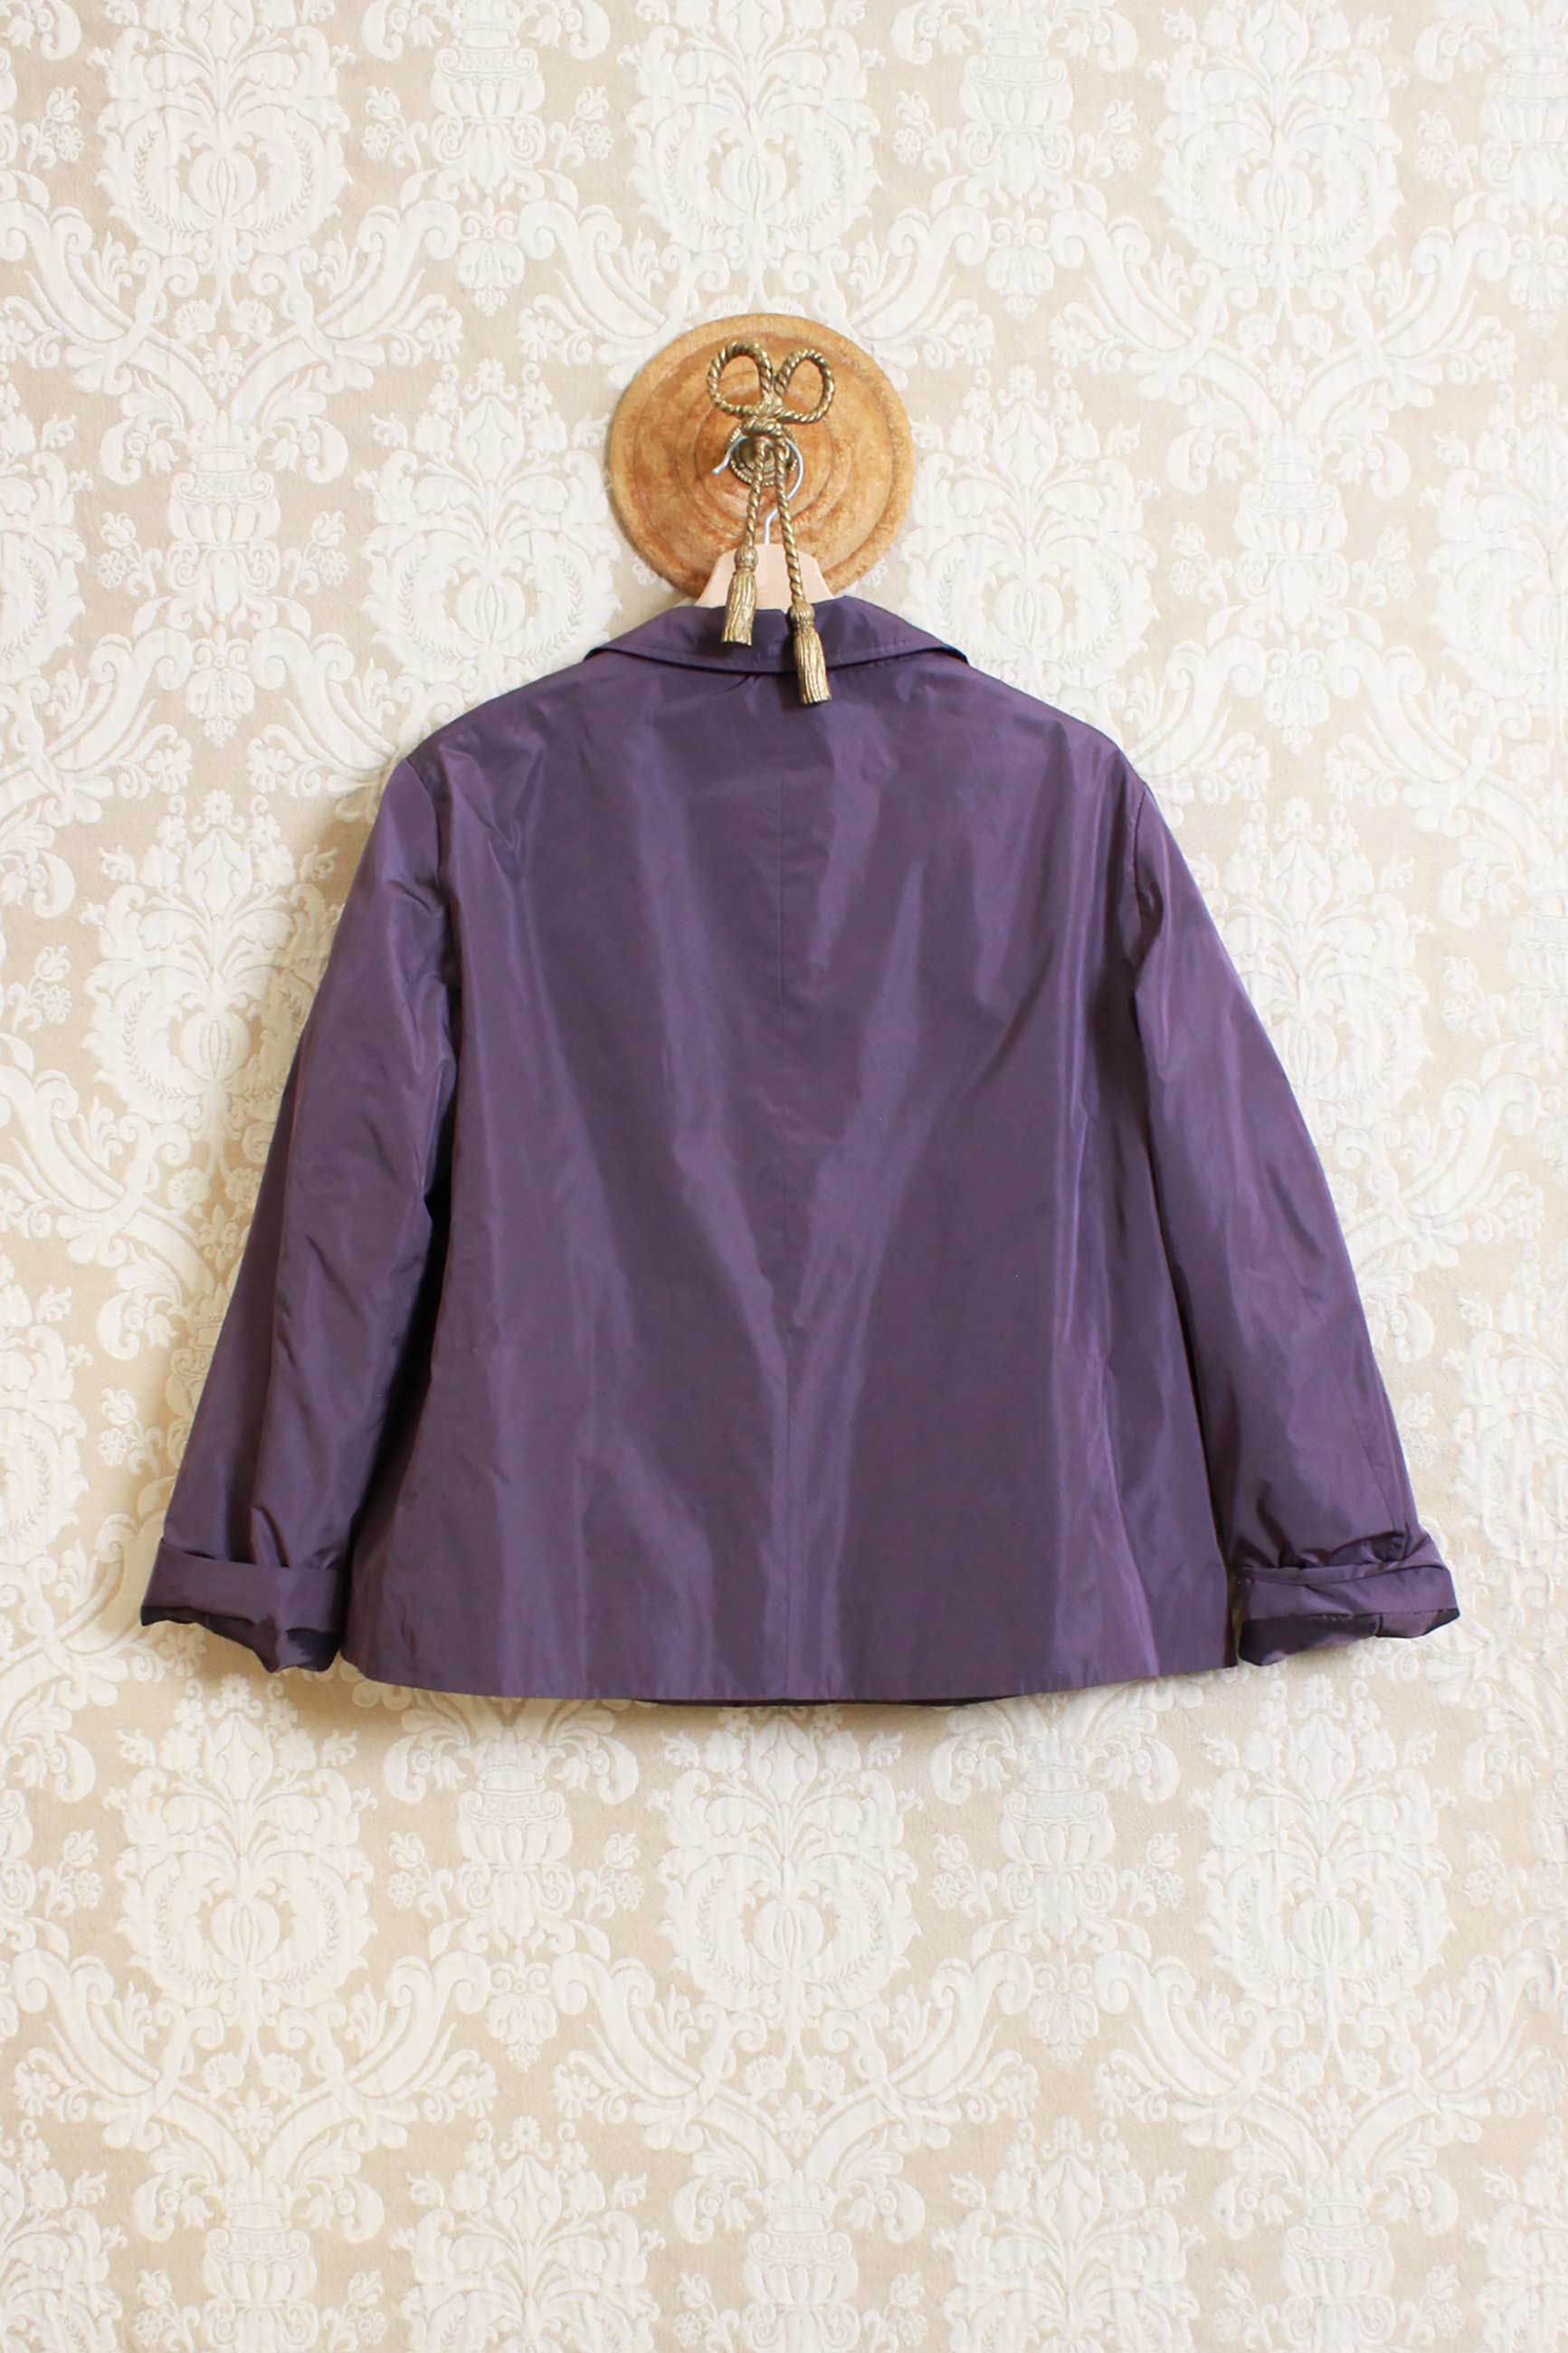 Giacca scatoletta in nylon della maison niù taglio cropped color purple violeta